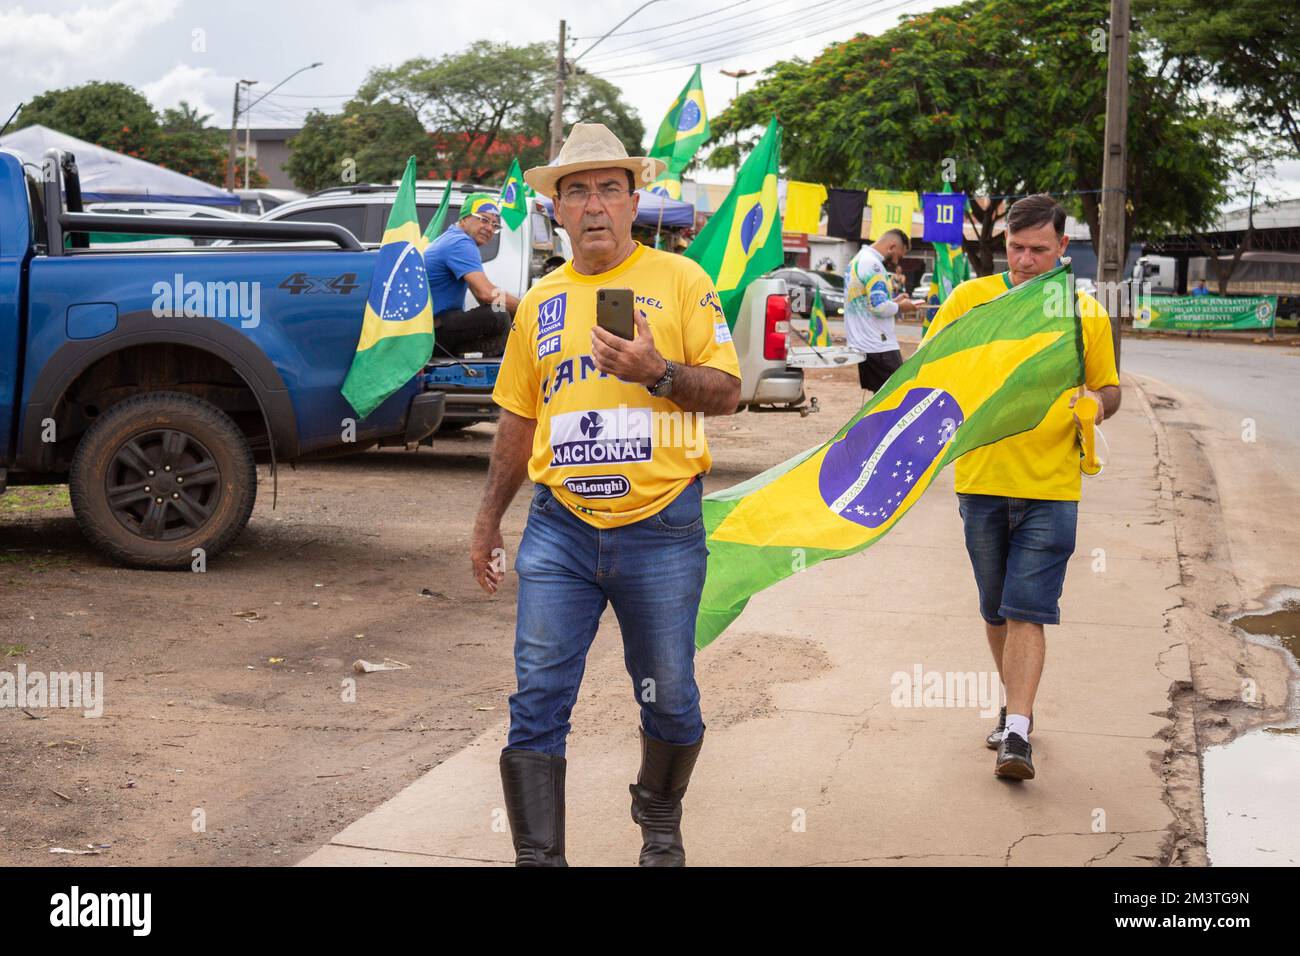 Anhänger von Präsident Bolsonaro führen in der Stadt Goiânia einen Staatsstreich durch, GO. Aufruf zu einer staatlichen Intervention gegen Lulas demokratische Wahl Stockfoto